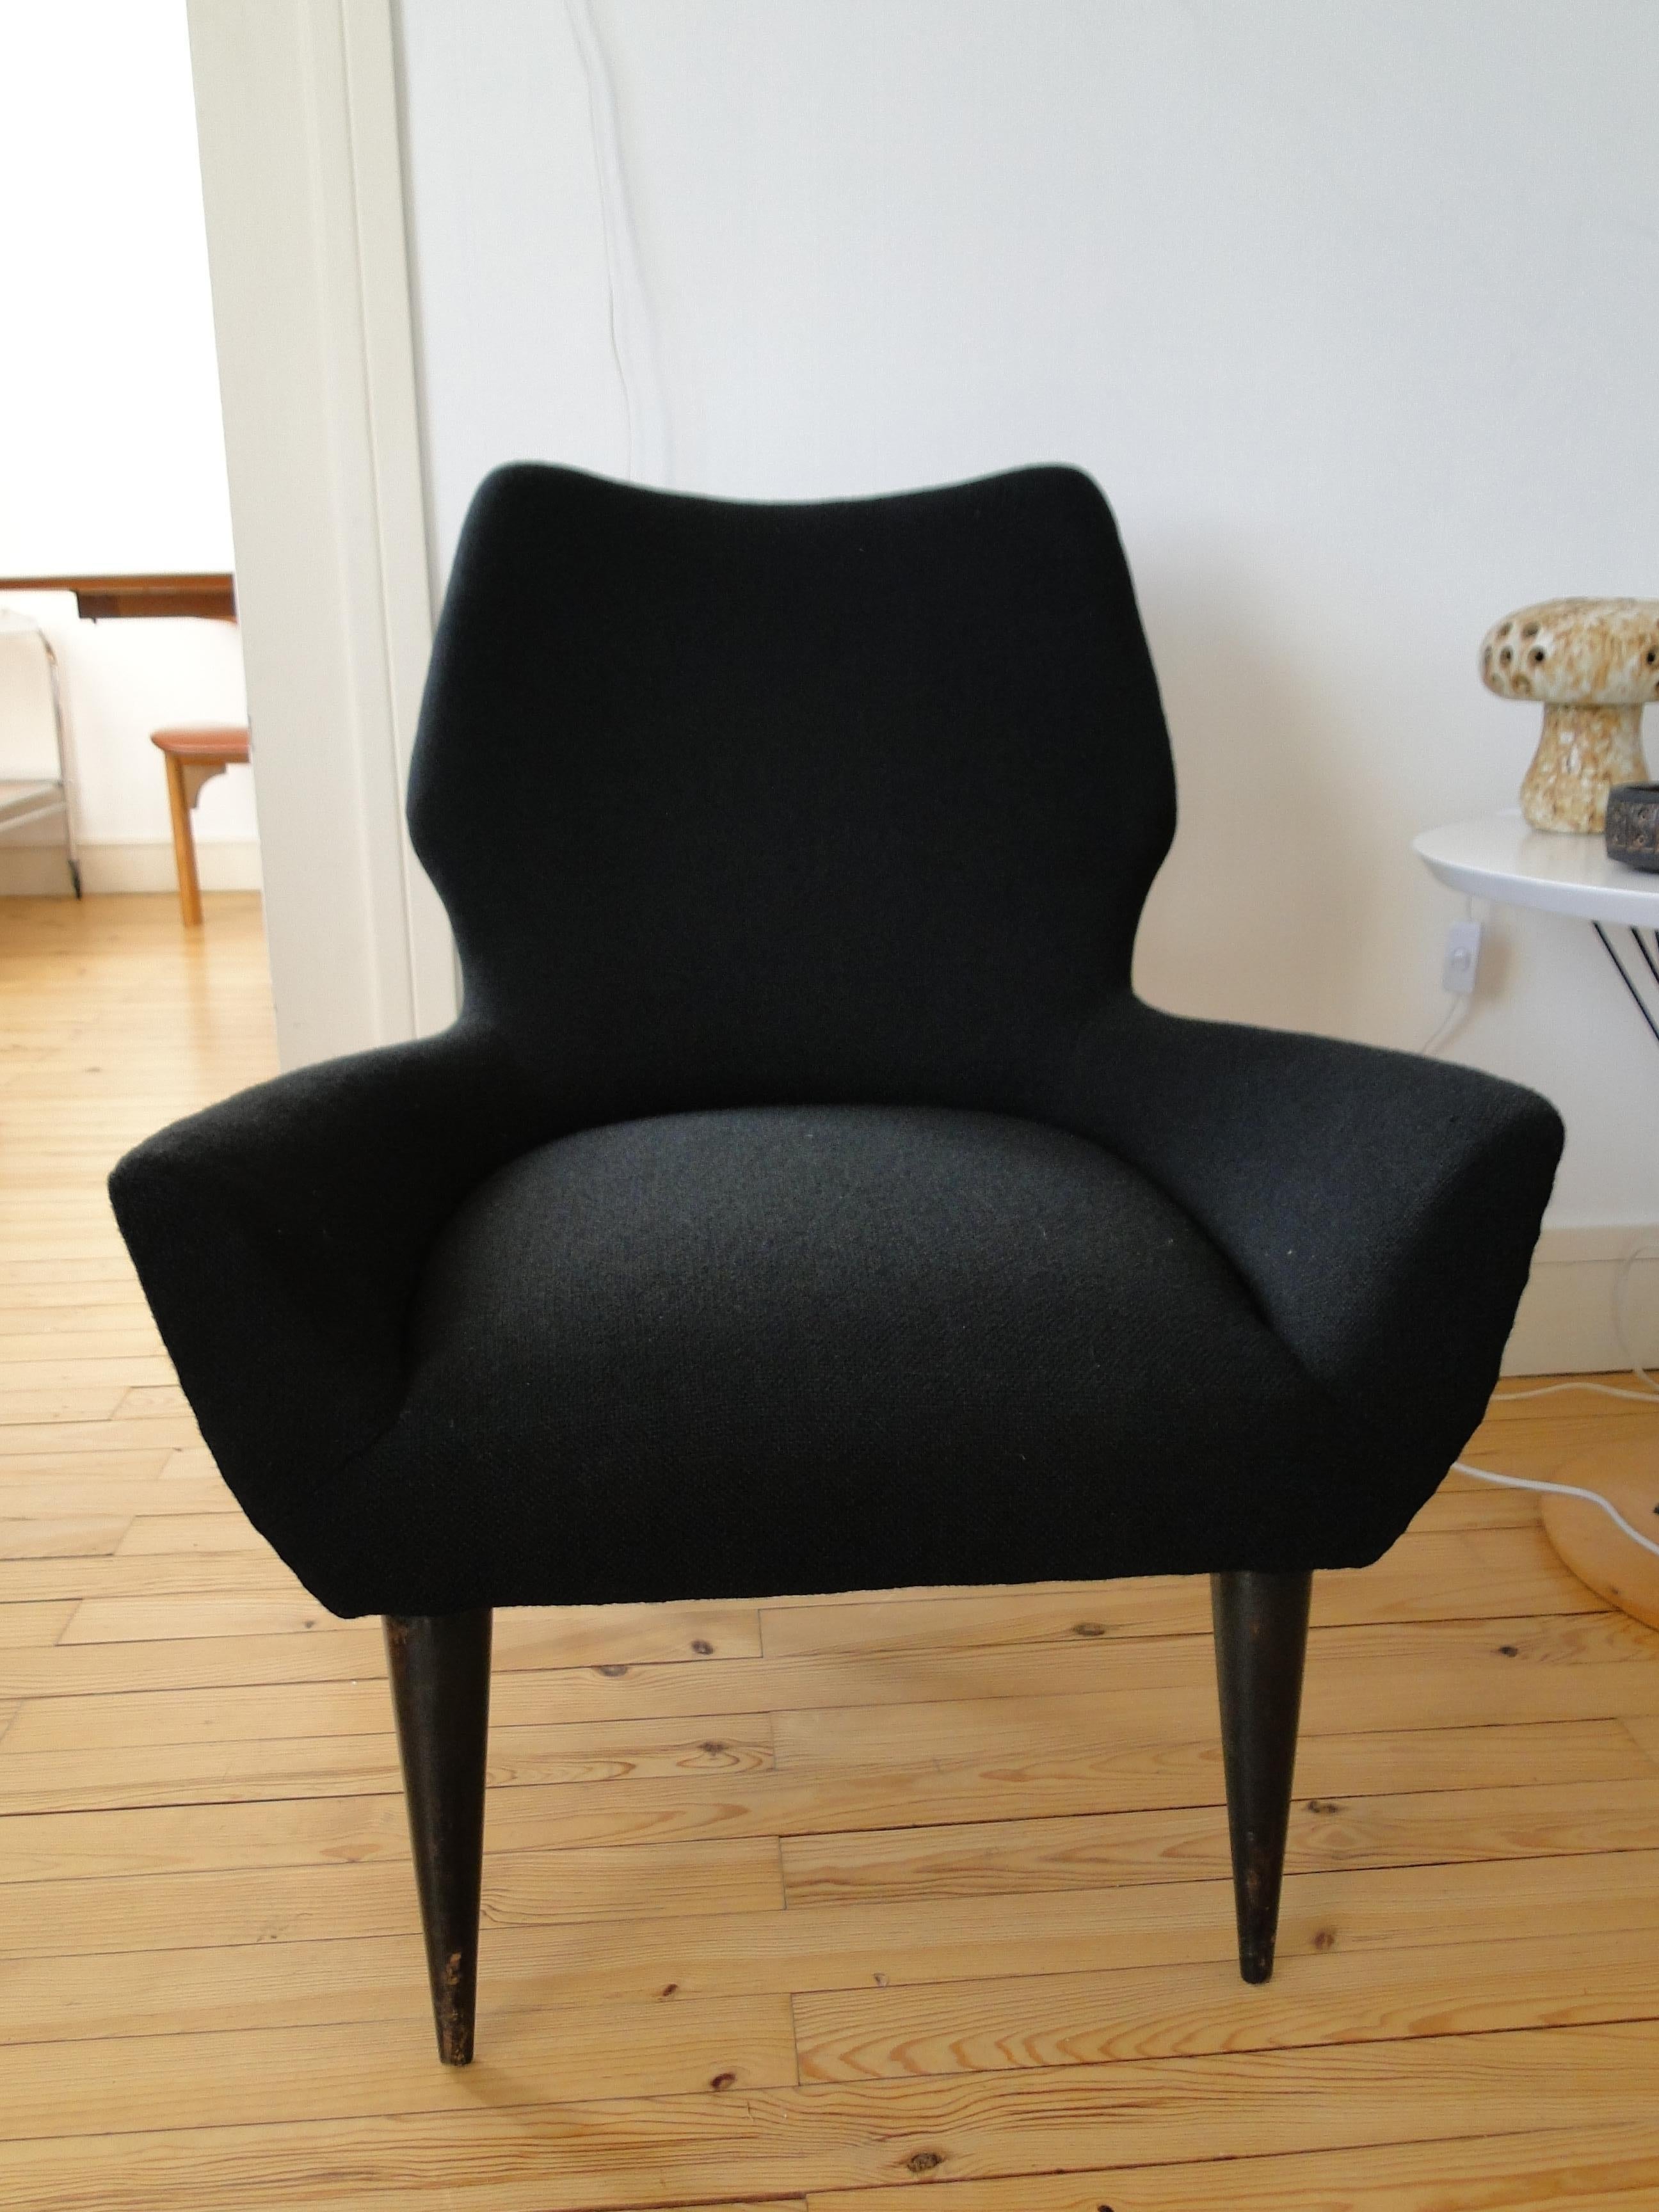 Joli fauteuil italien des années 60. 
Entièrement rénové et recouvert d'un tissu noir de Kvadrat. 
Très confortable avec ses courbes élégantes et facile à déplacer.

Bon état.